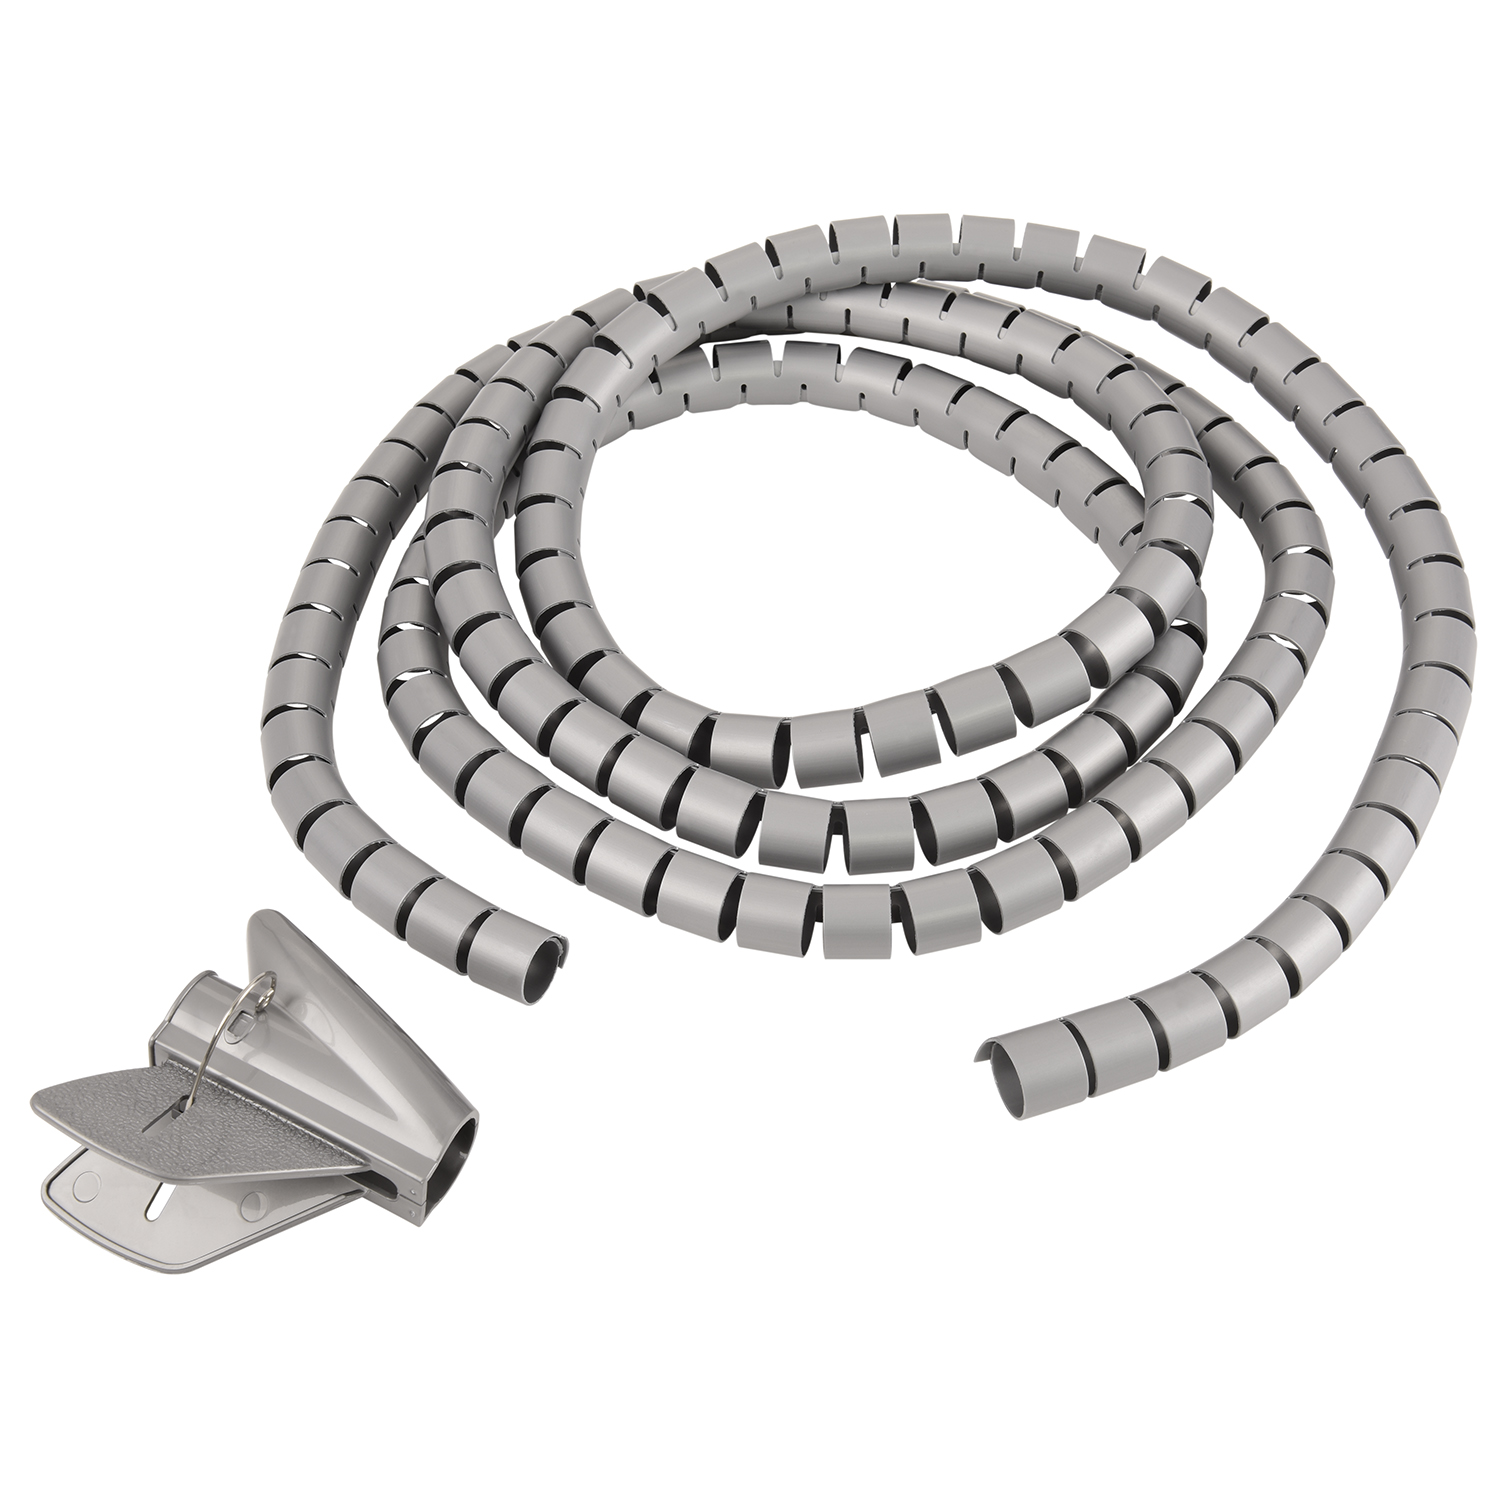 Silber Einfädelhilfe, Kabelschlauch, Premium 5m Silber, mit Spiral-Kabelschlauch 20mm, TPFNET